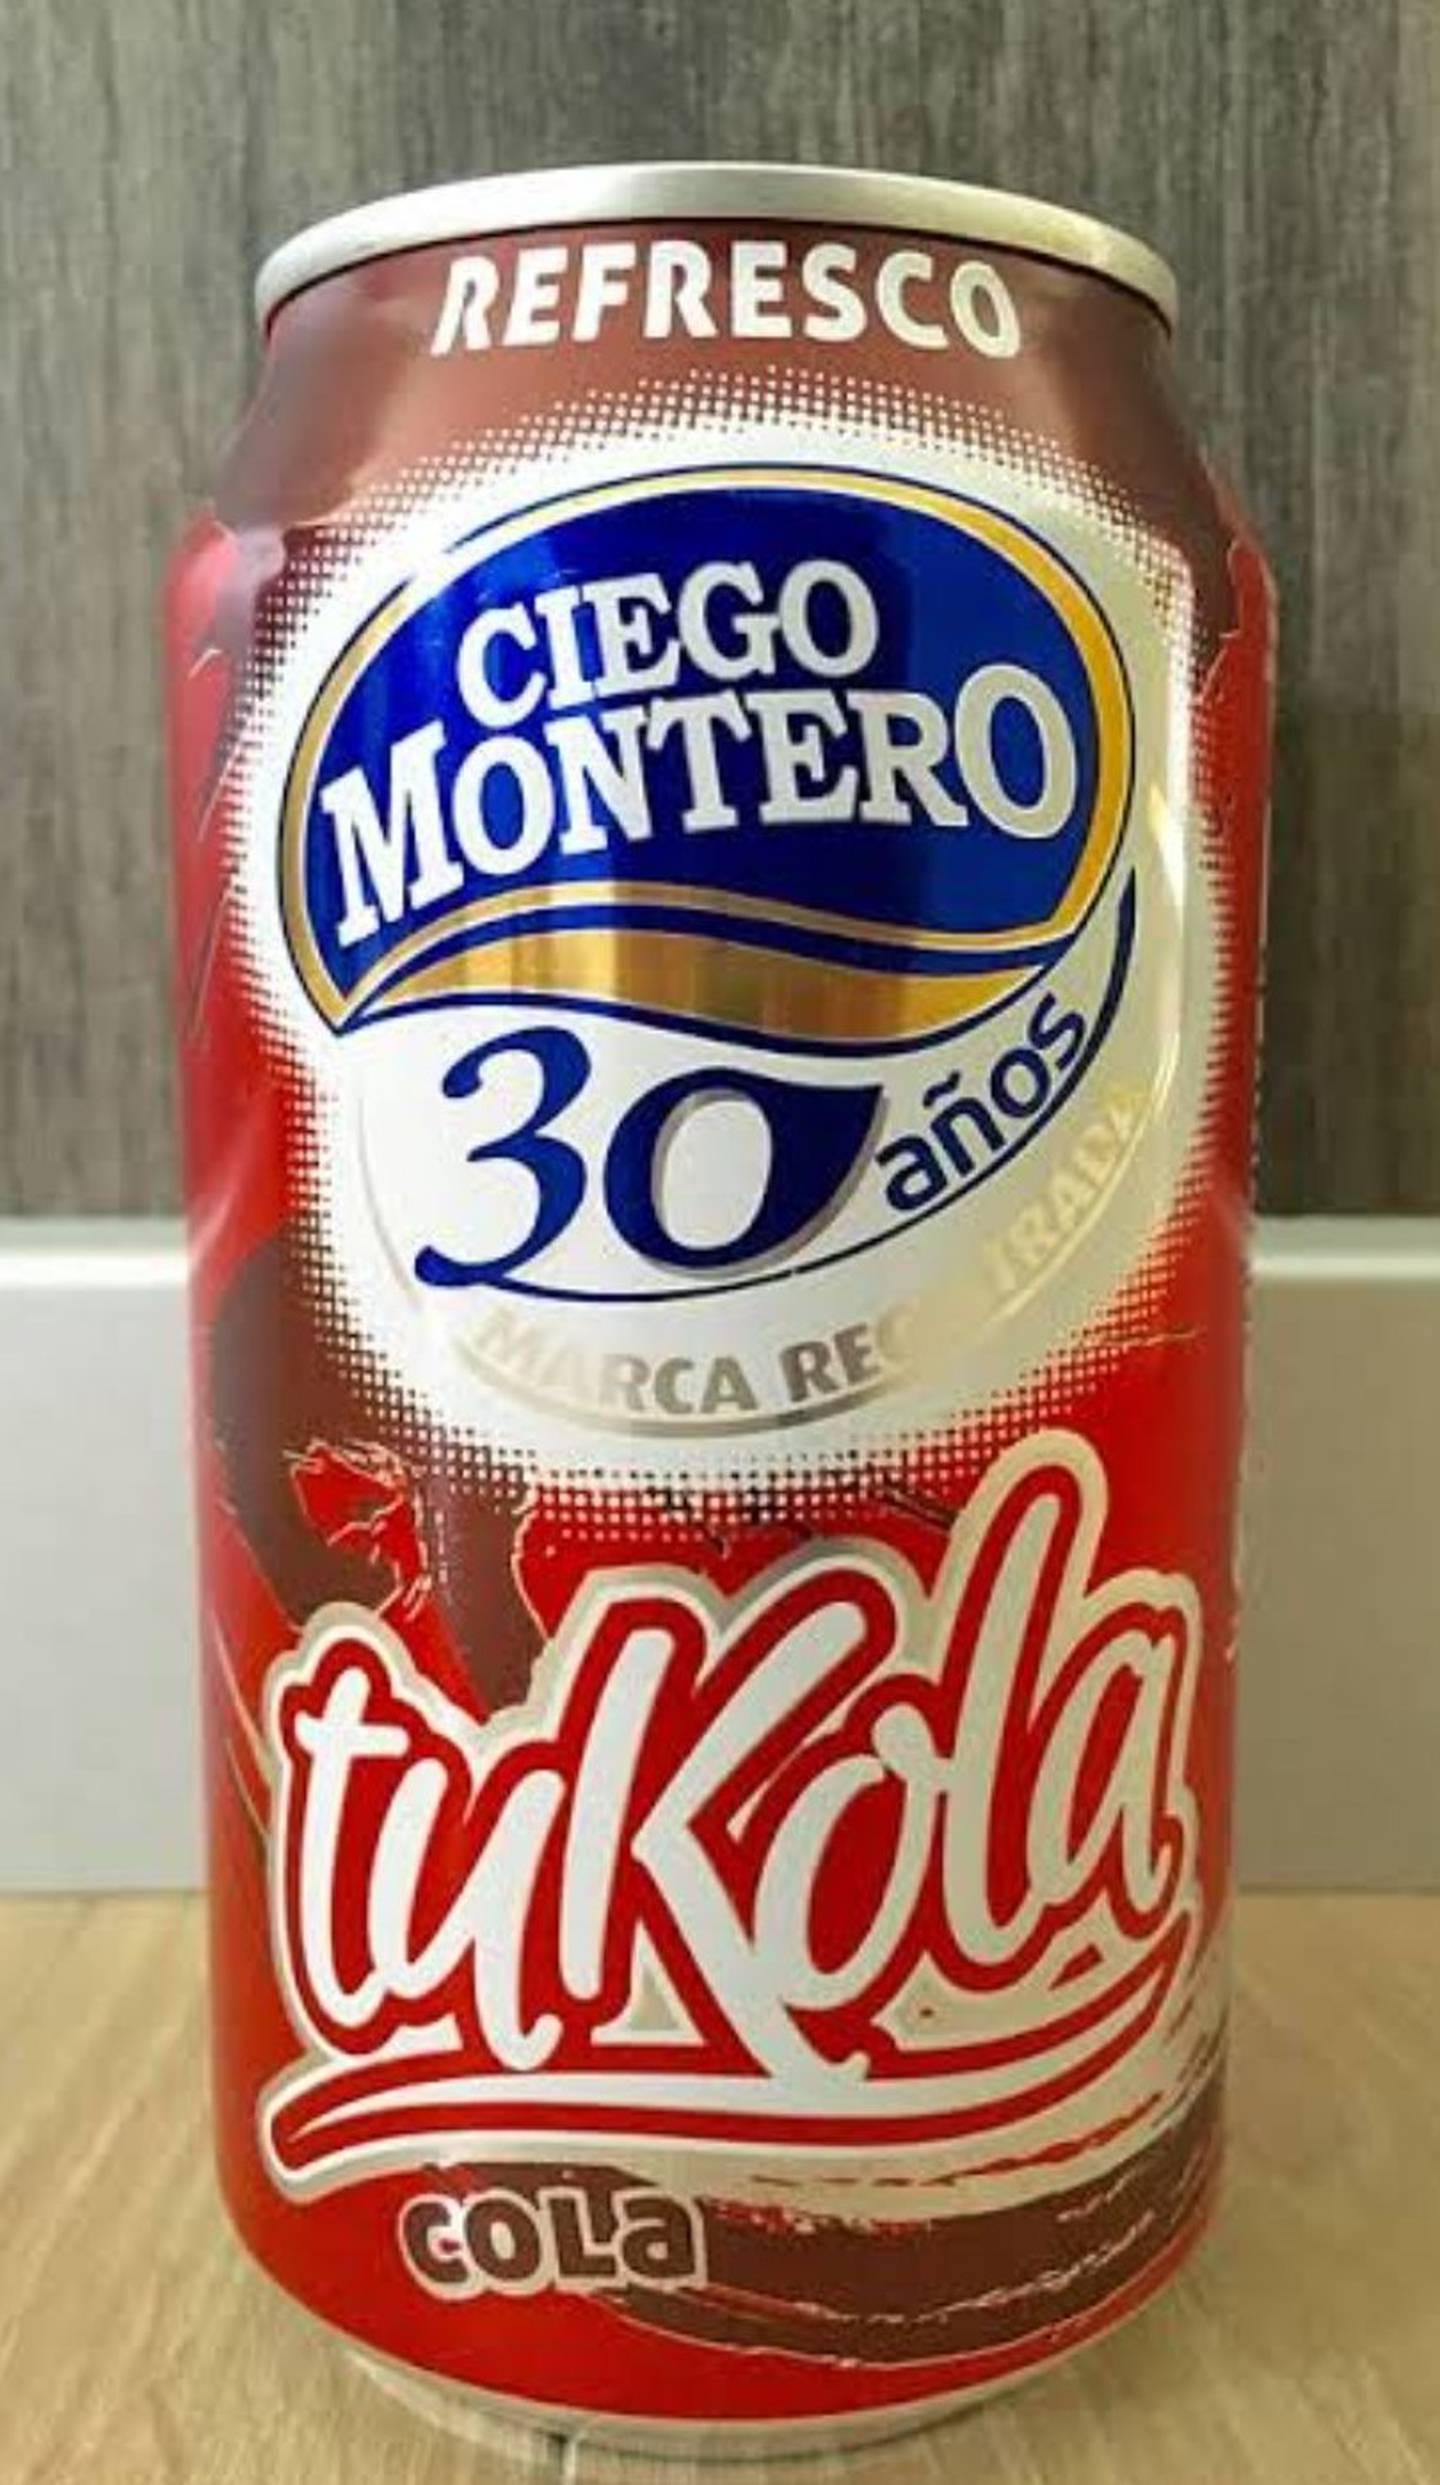 La alternativa cubana a Coca-Cola: Tukola.dfd